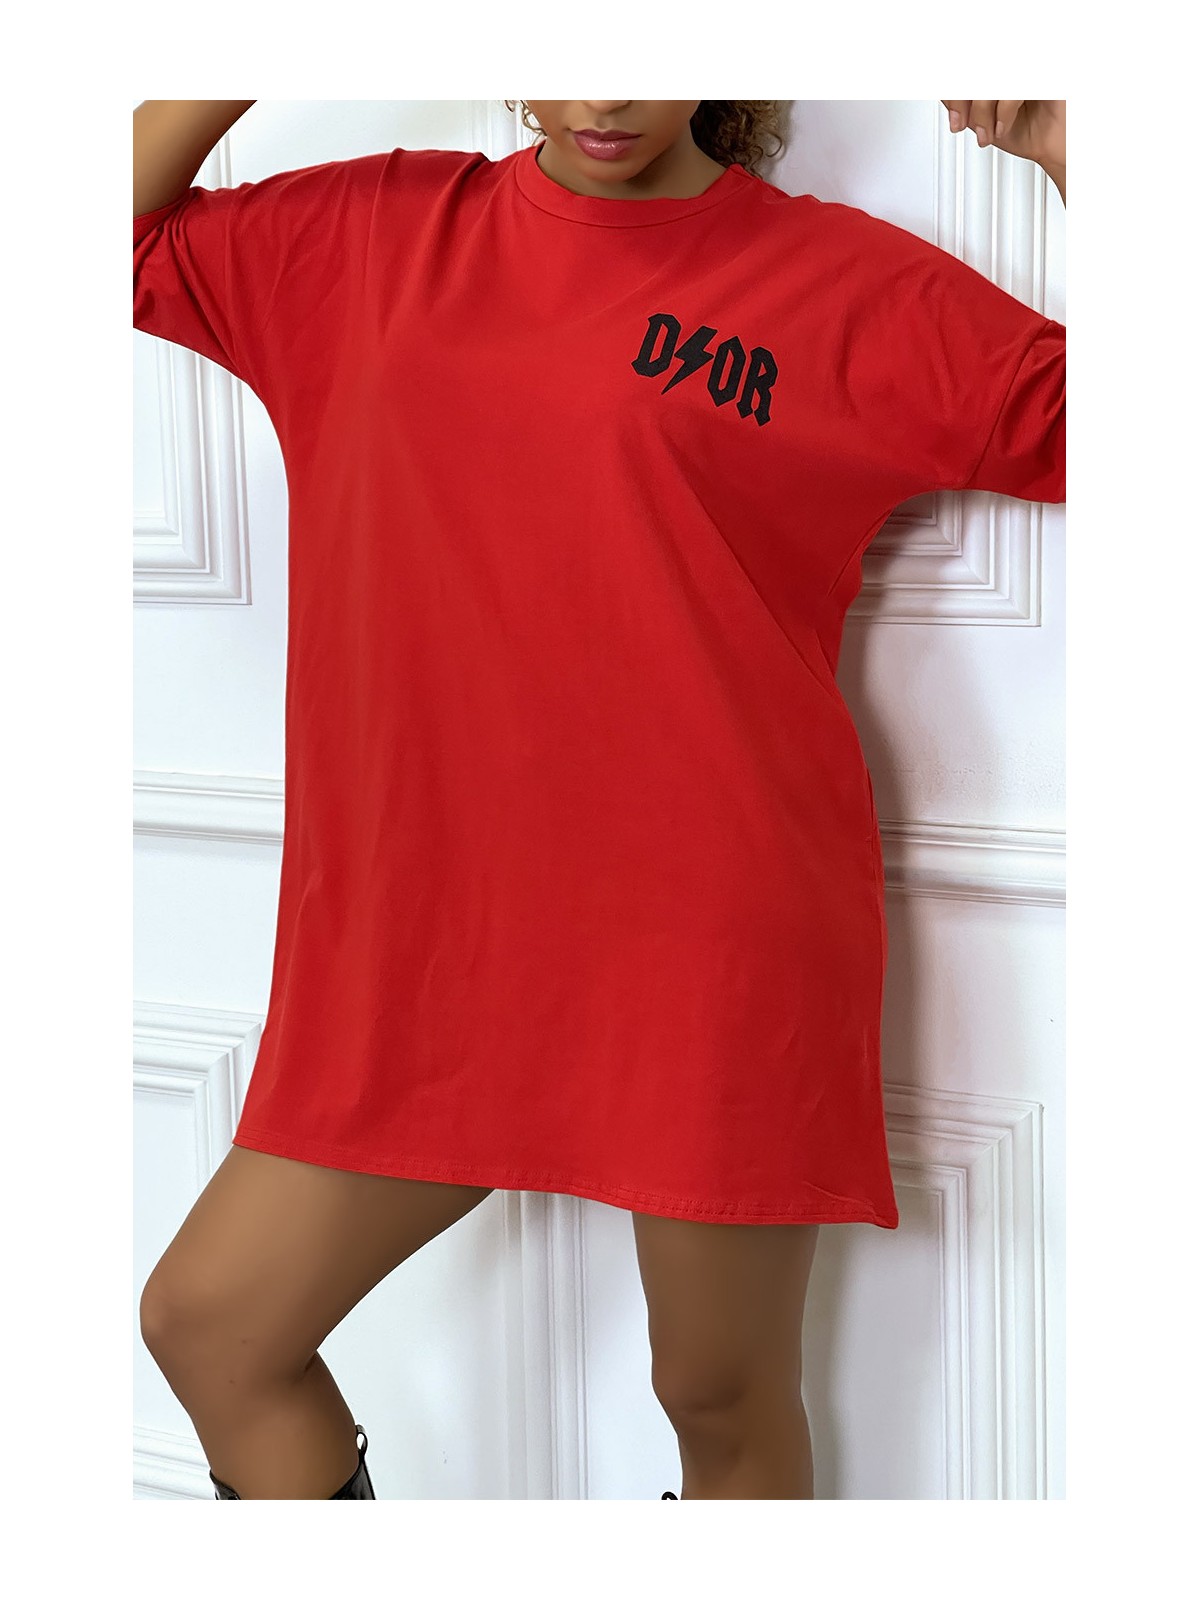 Tee-shirt oversize rouge tendance, écriture "D/or", manche mi-longue - 8